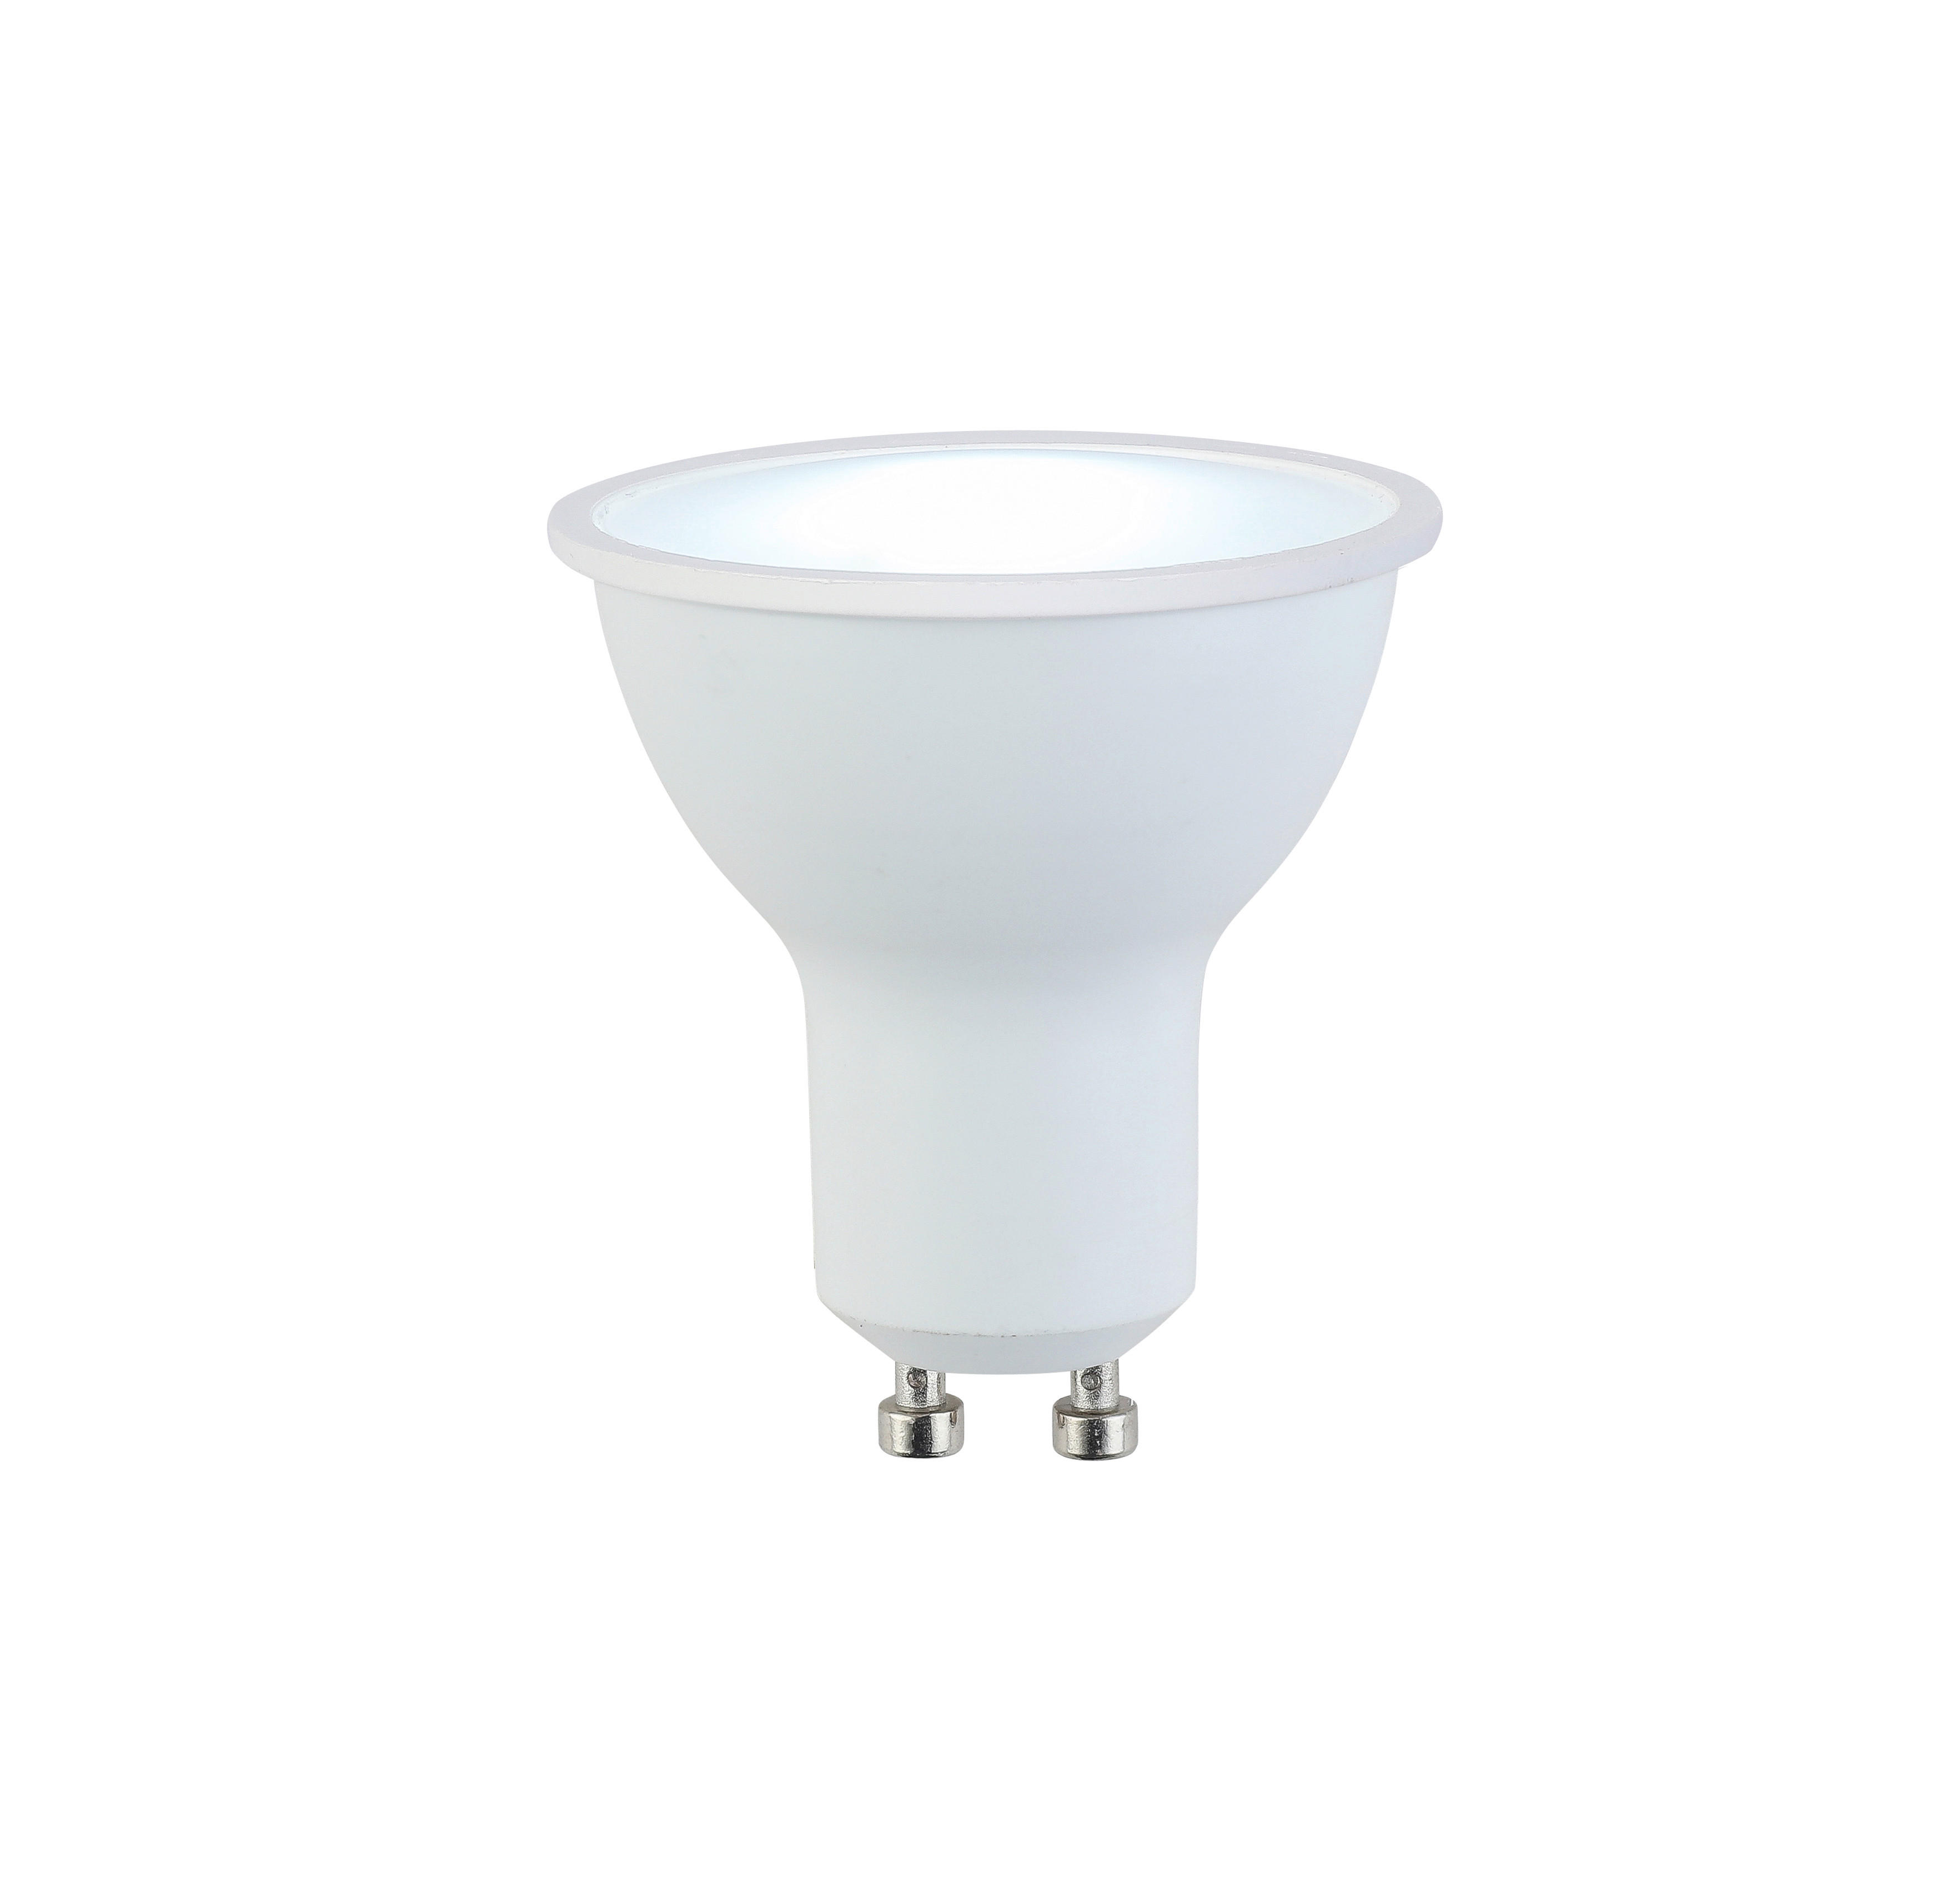 LED ŽIAROVKA - biela, Basics, kov/plast (5/5,6cm) - Boxxx